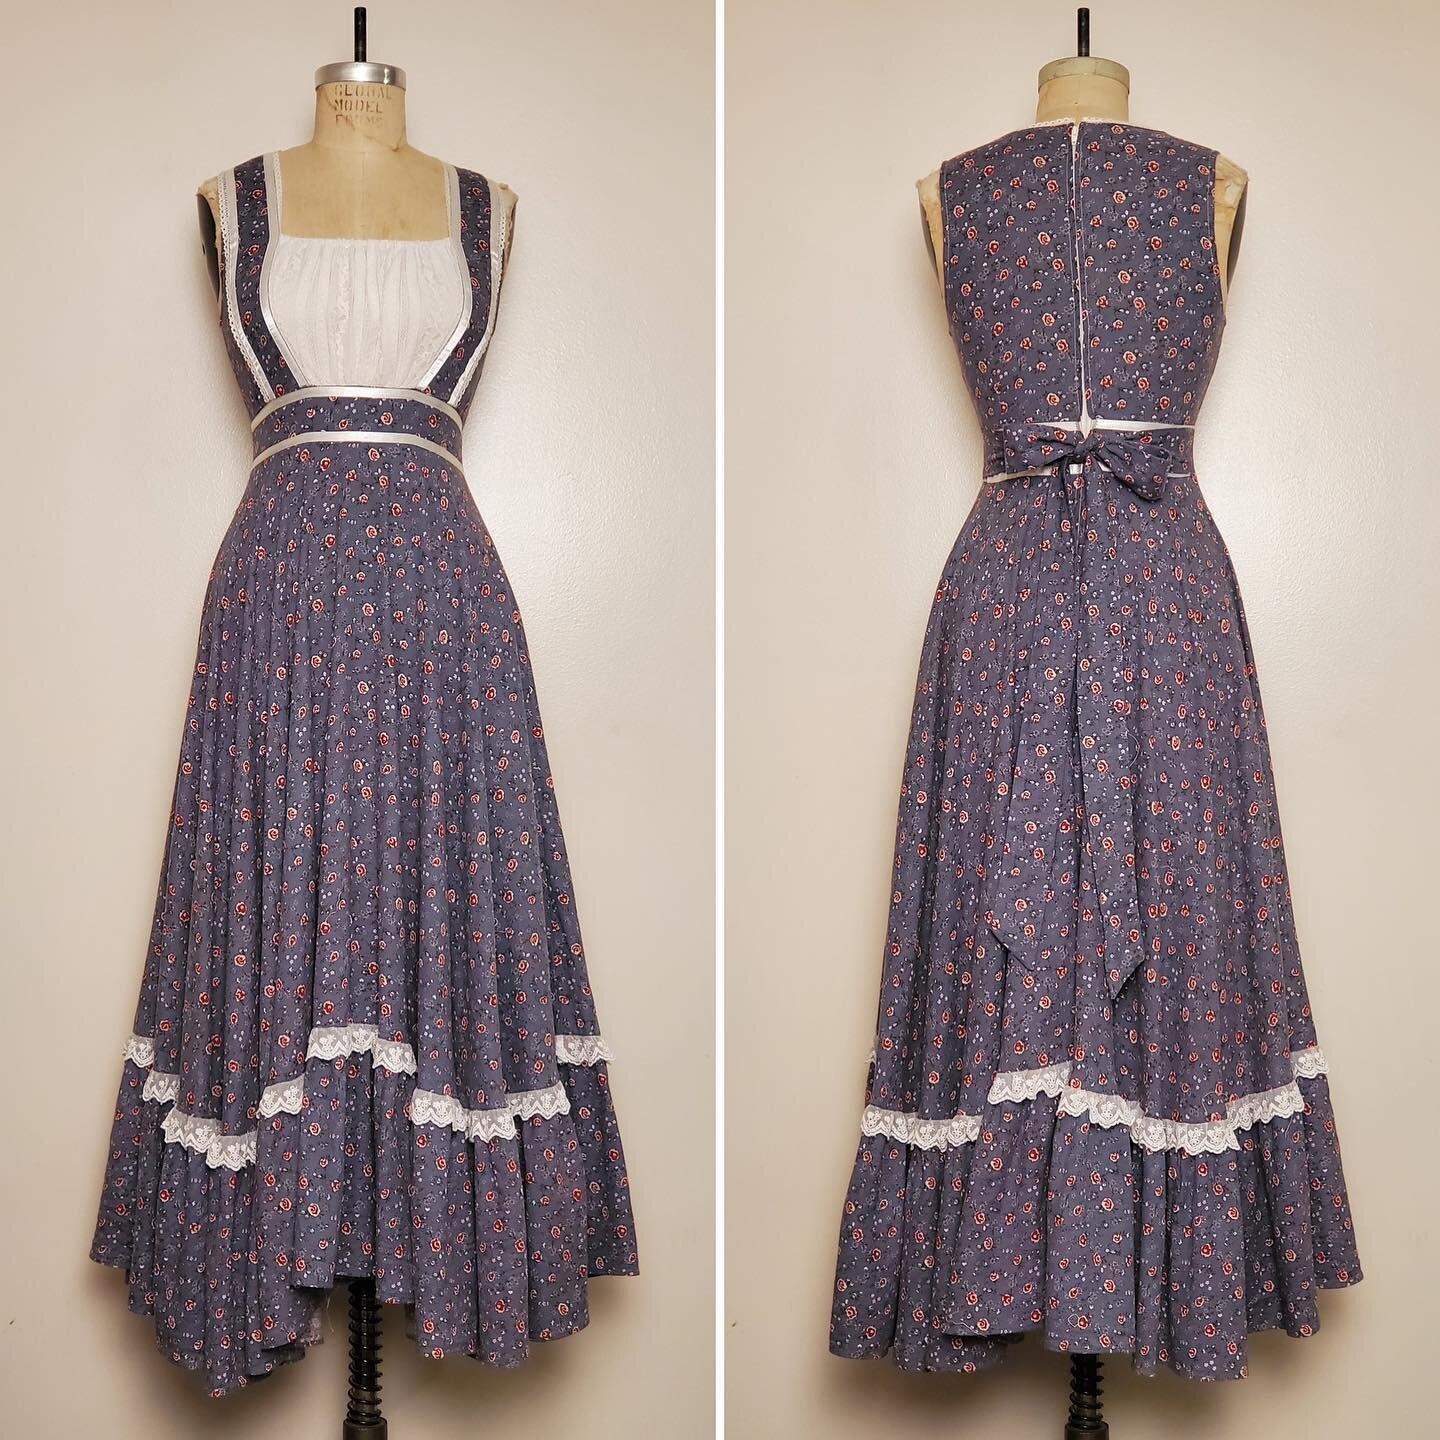 &quot;Short Prairie Dress || Gunne Sax STYLE || Waist: 25&quot;&quot; || Size XS&quot;.

#atahboutique #vintage #vintagedress #gunnesax #gunnesaxstyle #prairiedress #cottogecore